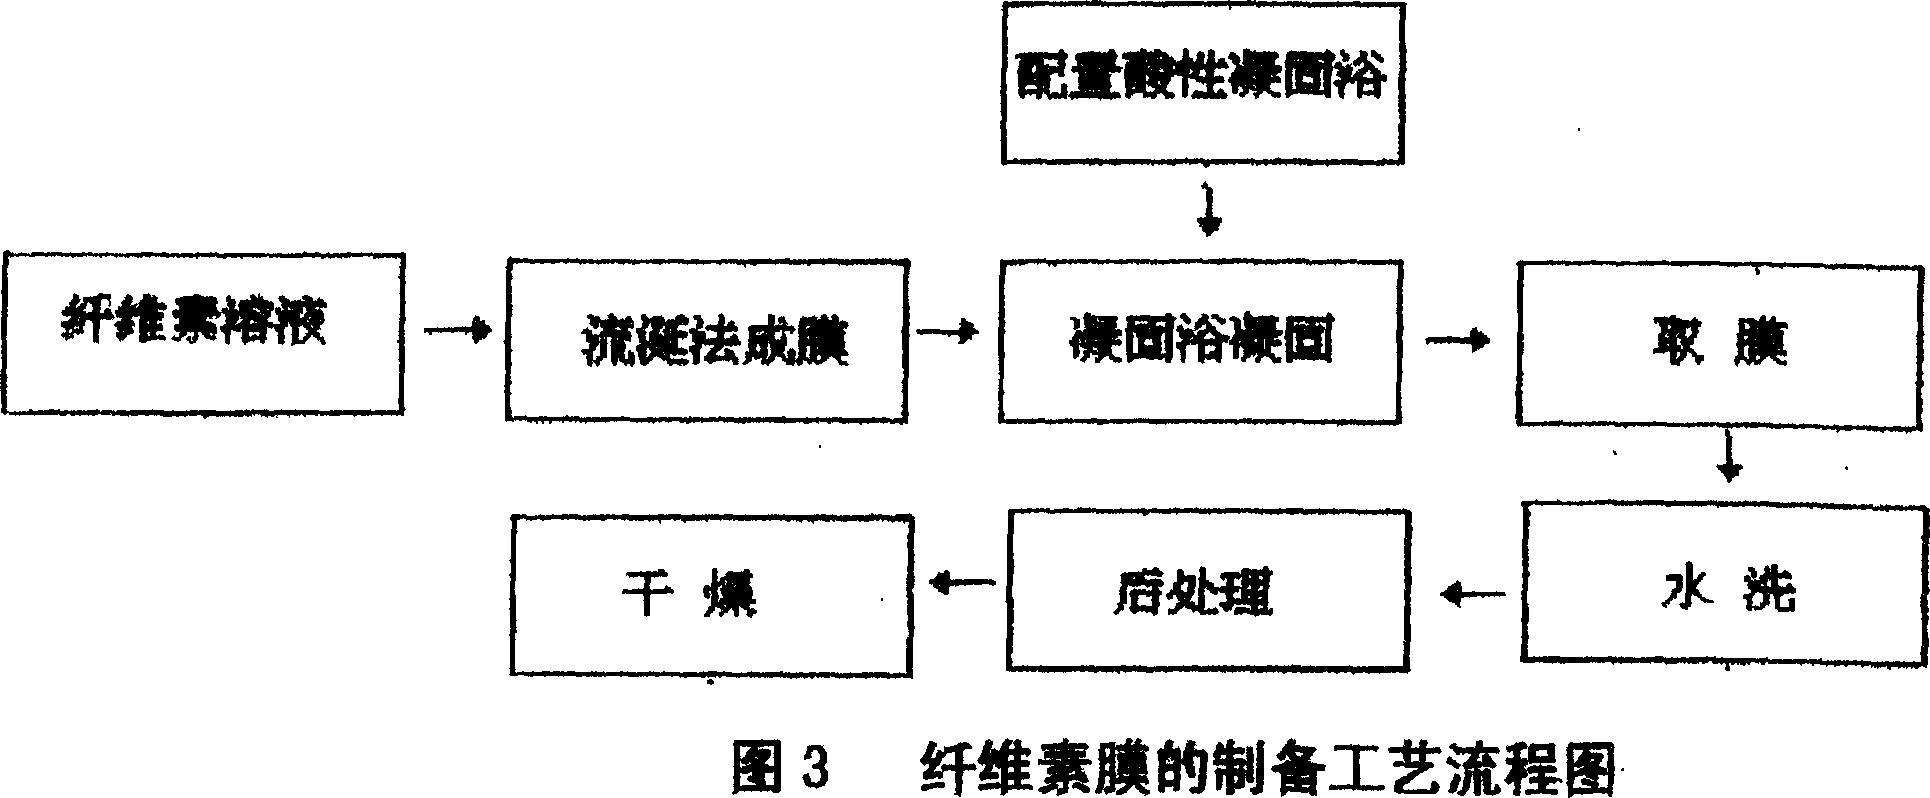 Preparation method of cellulose film